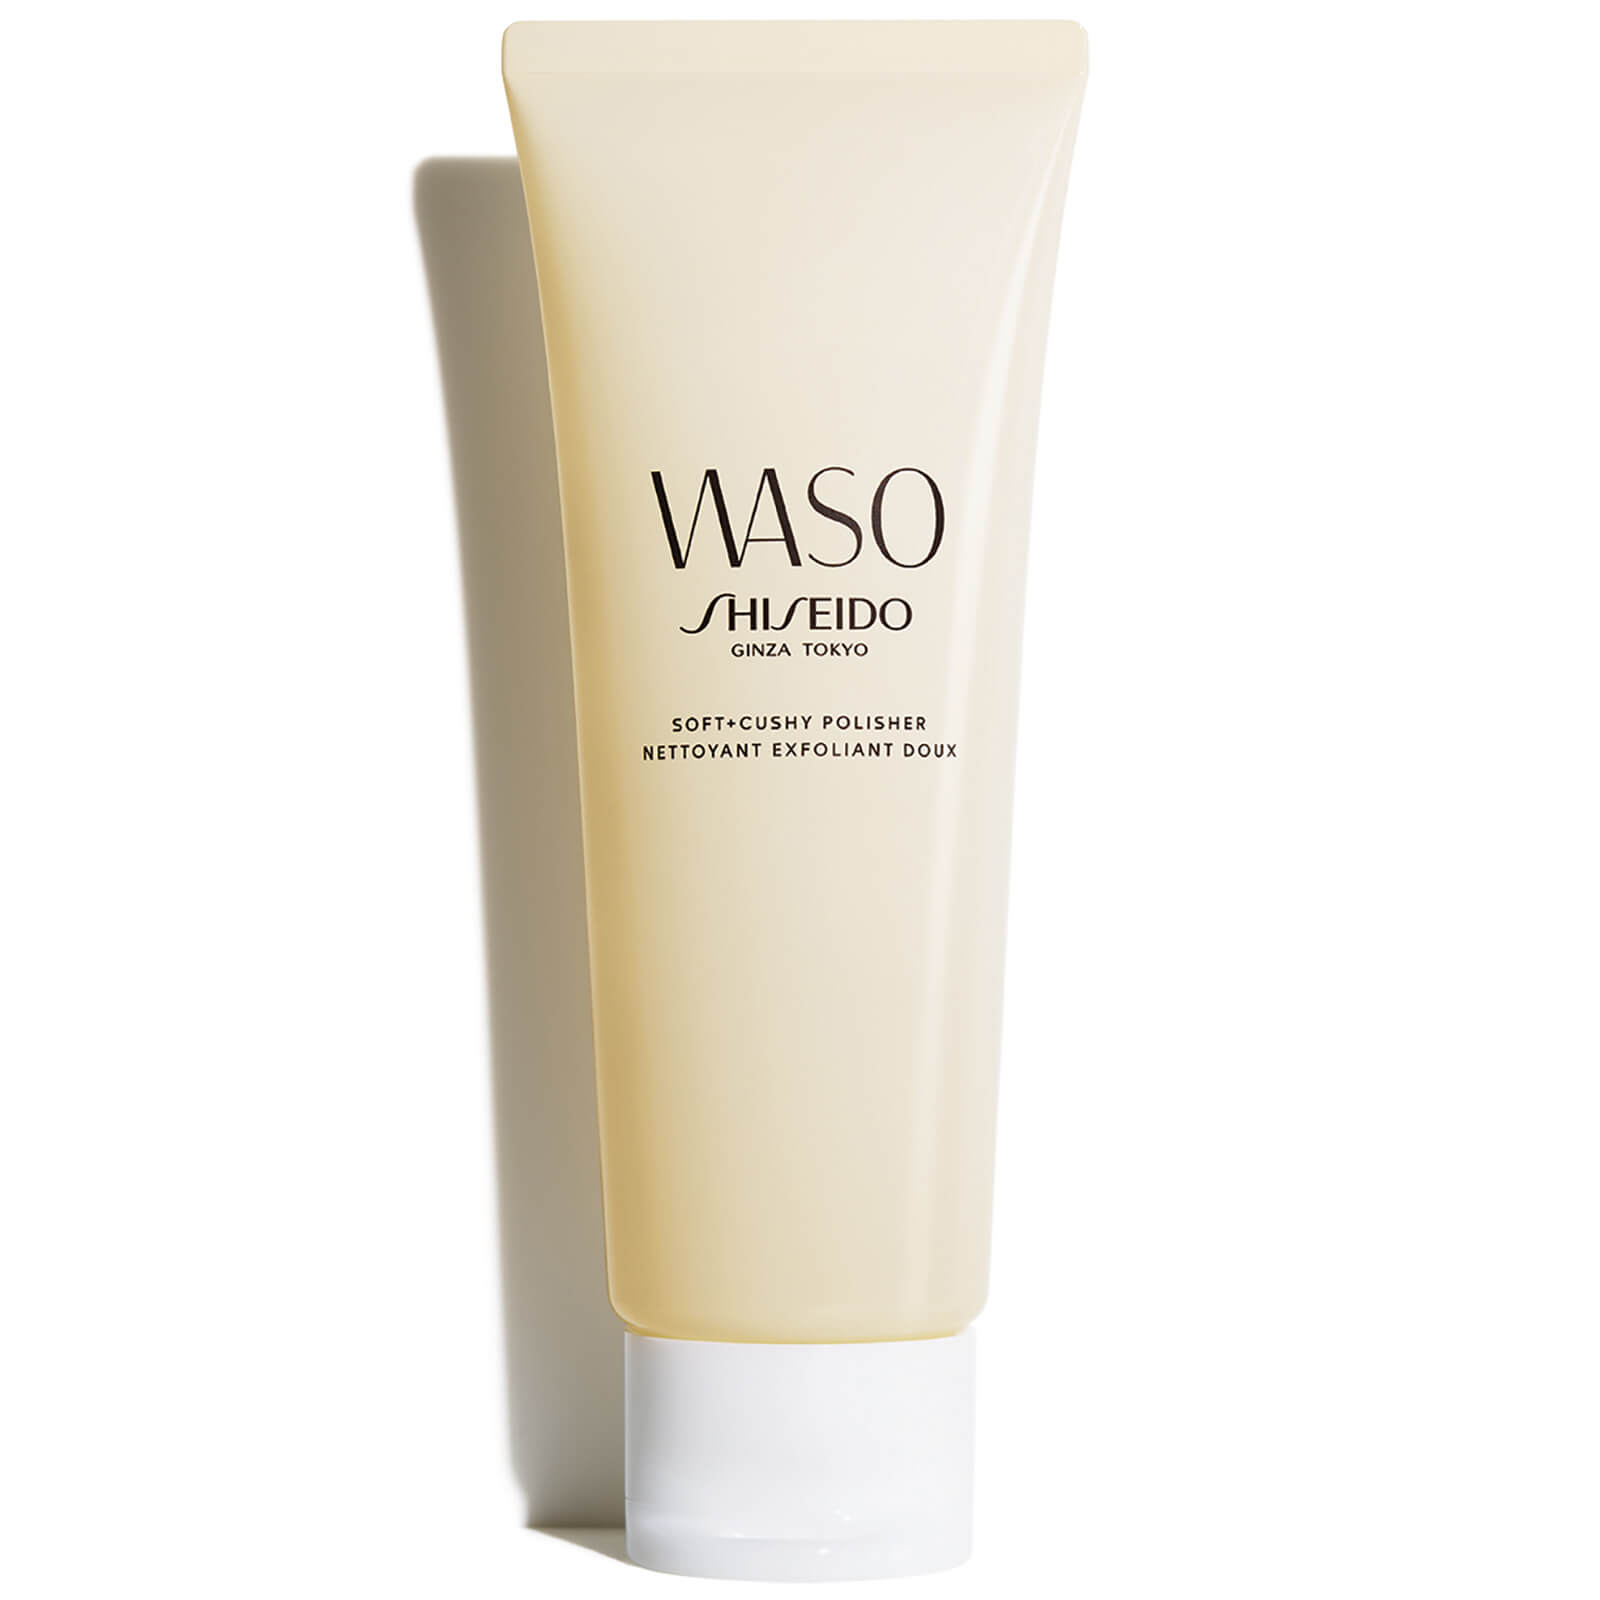 Shiseido WASO Soft and Cushy Polisher 75ml